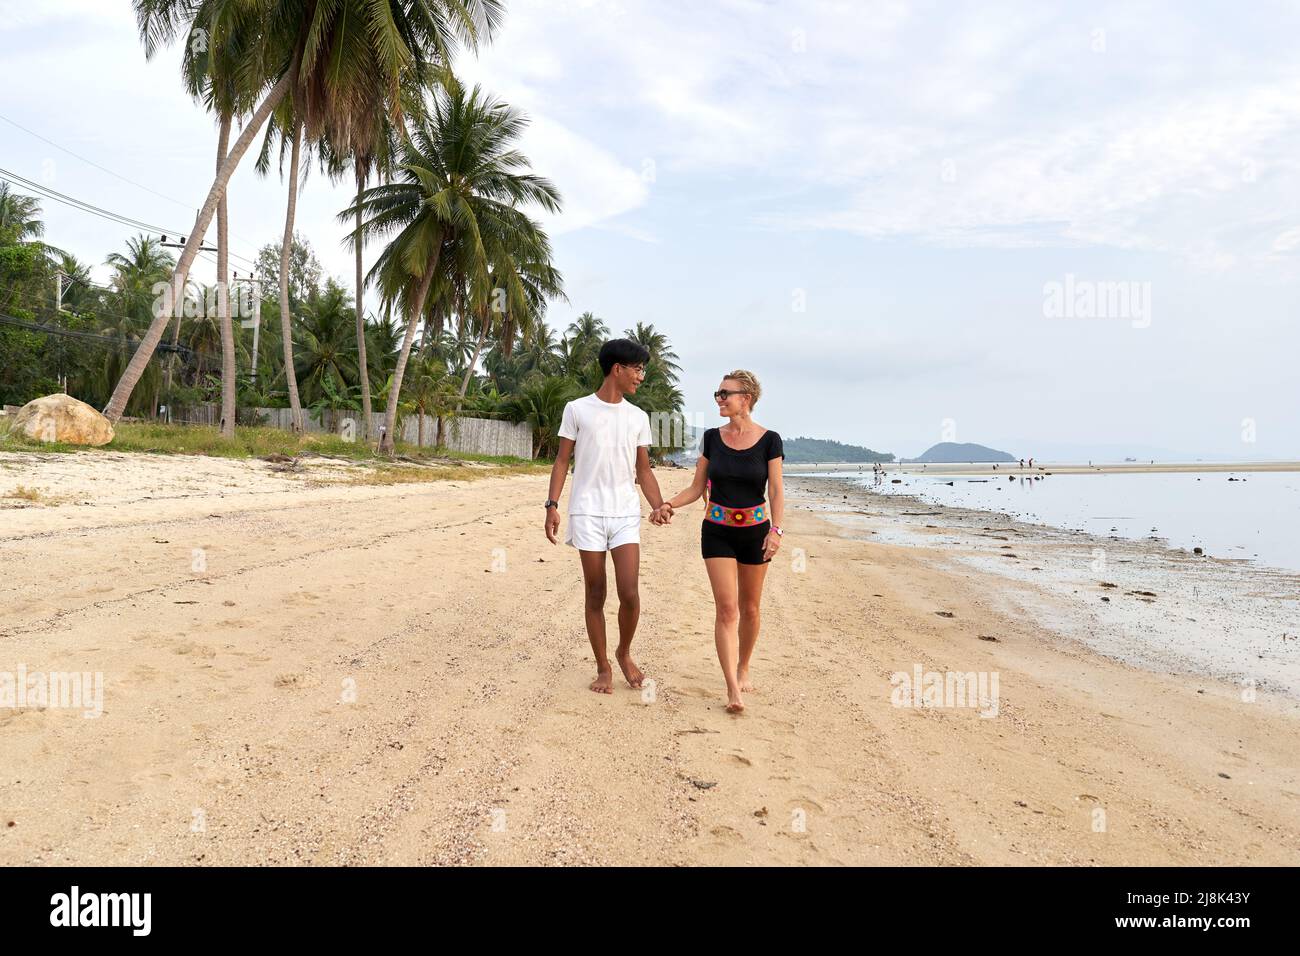 Coppia multietnica camminando insieme in una spiaggia di sabbia tropicale Foto Stock